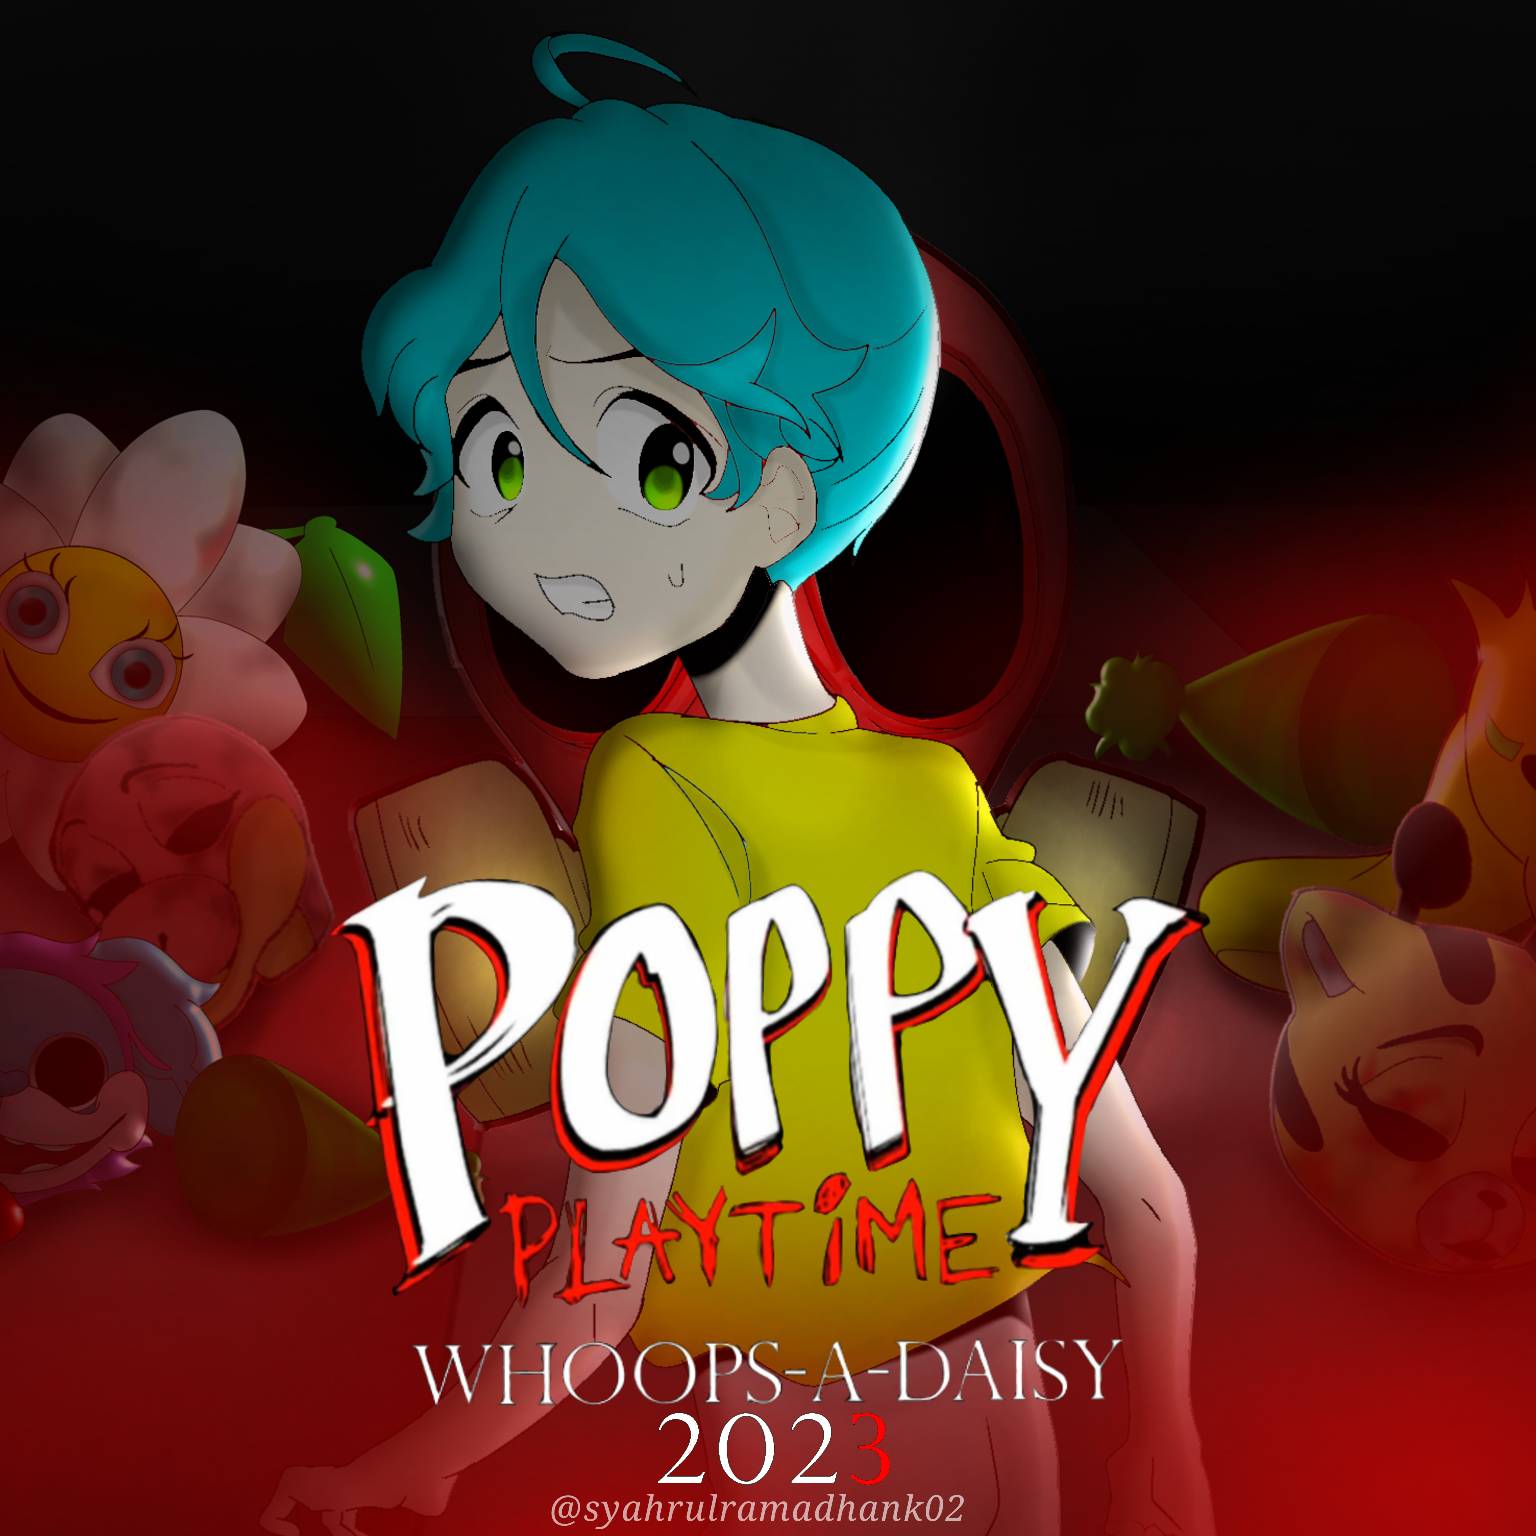 Poppy Playtime - Poppy Playtime: Chapter 3 - Teaser Trailer #2